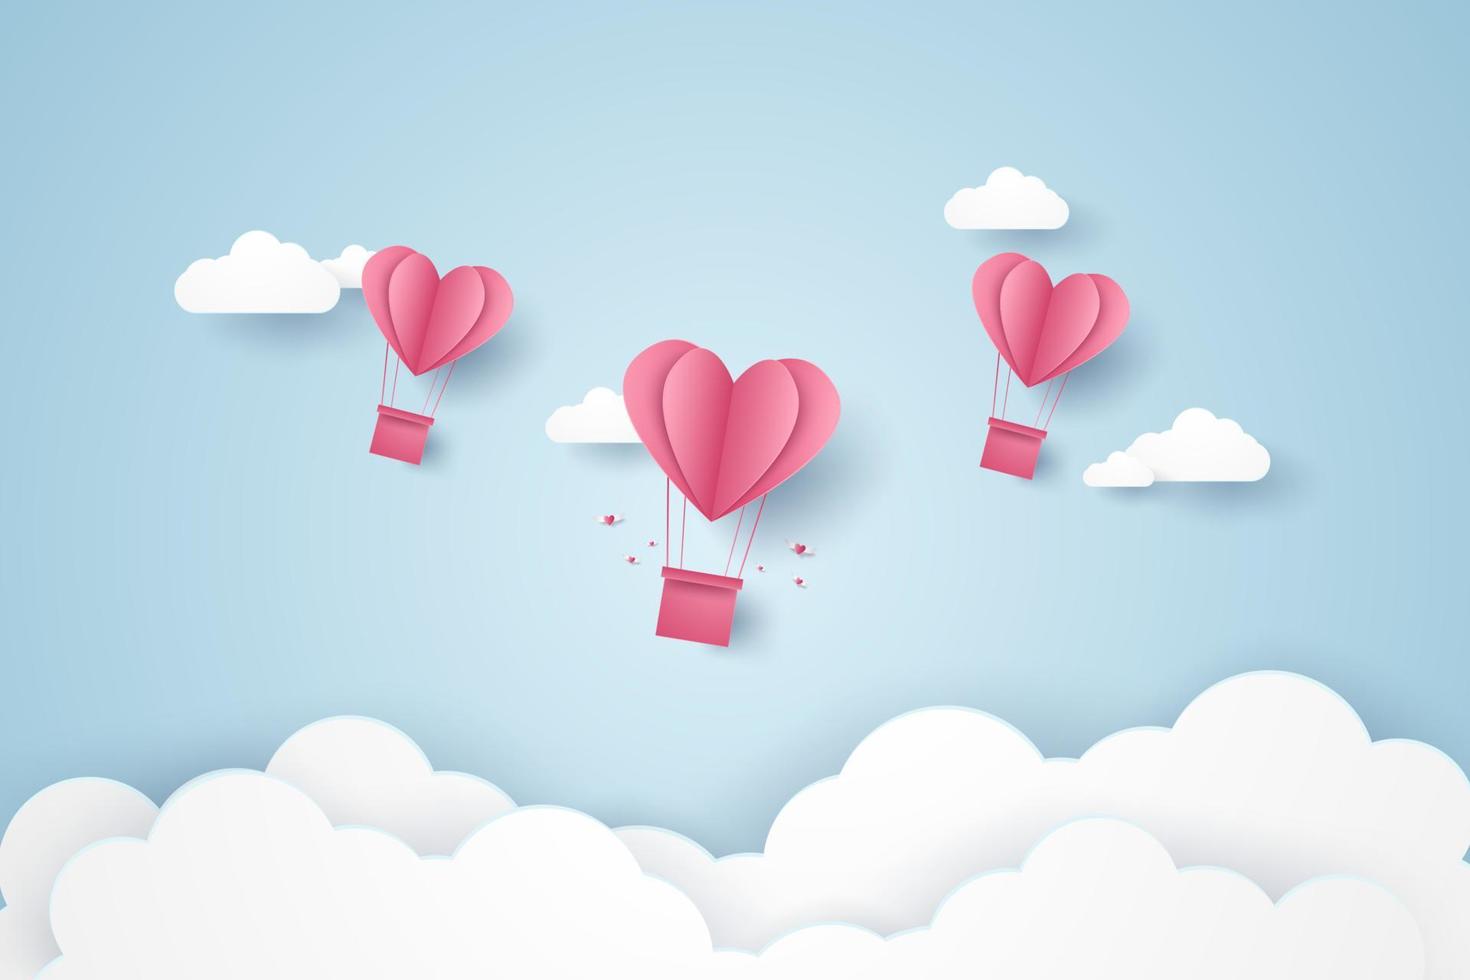 saint valentin, illustration de l'amour, ballons à air chaud coeur rose volant dans le ciel bleu, style art papier vecteur